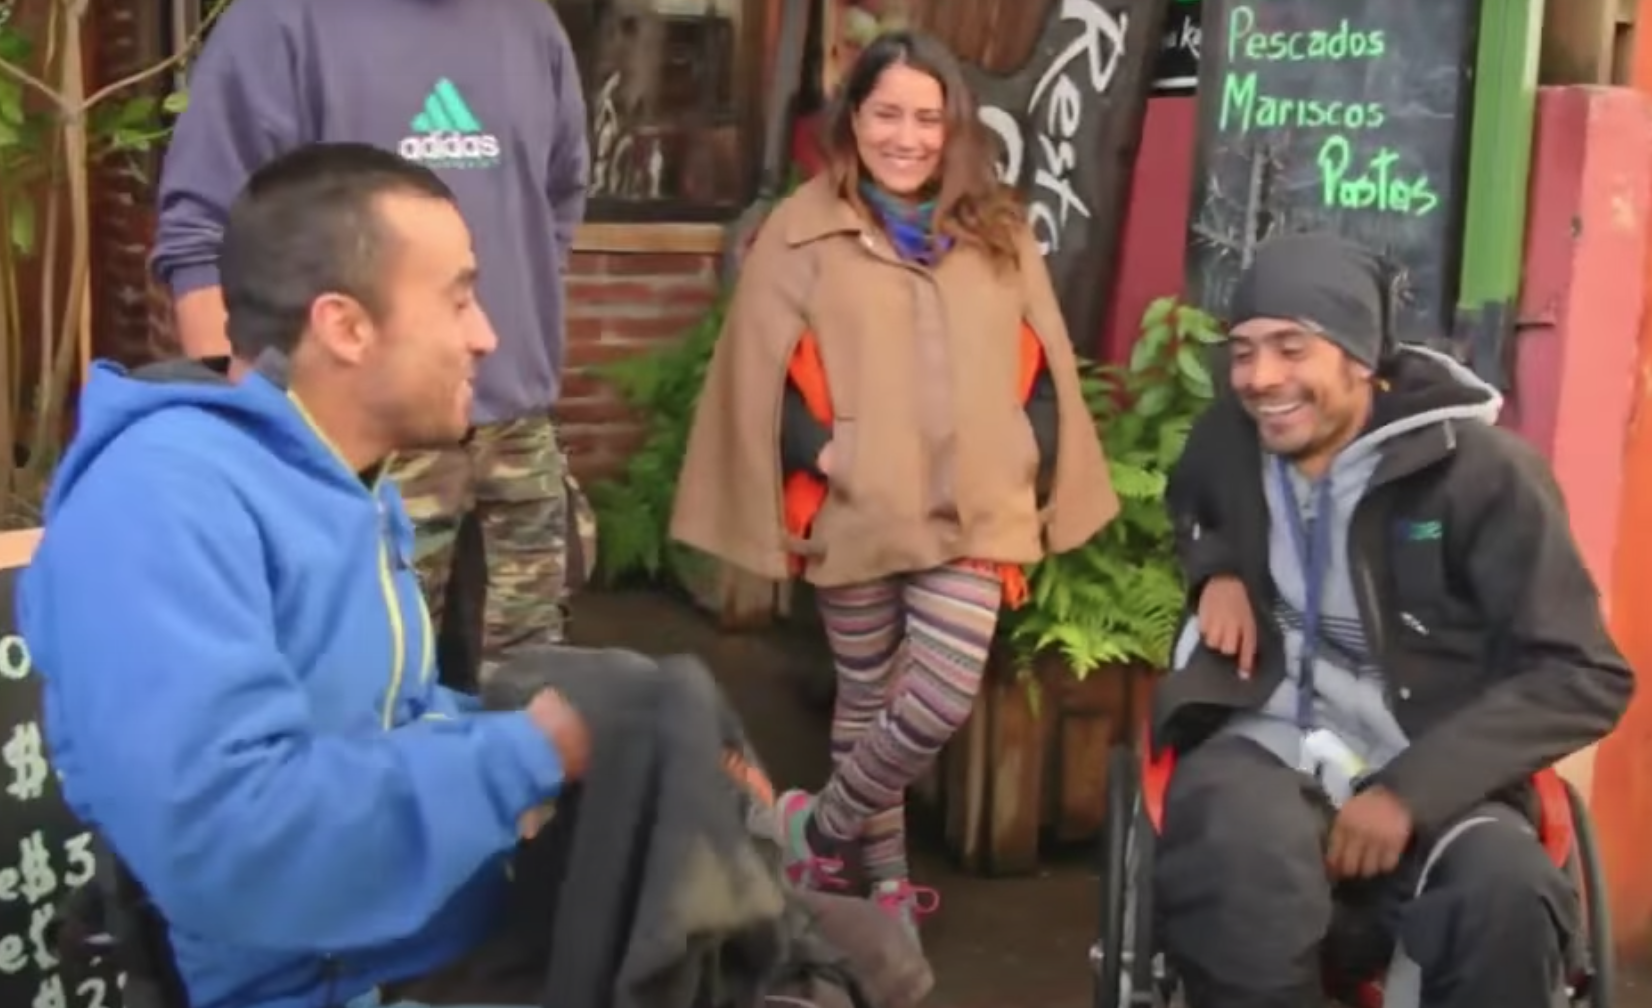 Dos personas en silla de ruedas sonriendo, una mujer sonriendo entre ellos y un joven parado al lado, afuera de un restaurant despidiéndose. El lugar es en el sur de Chile